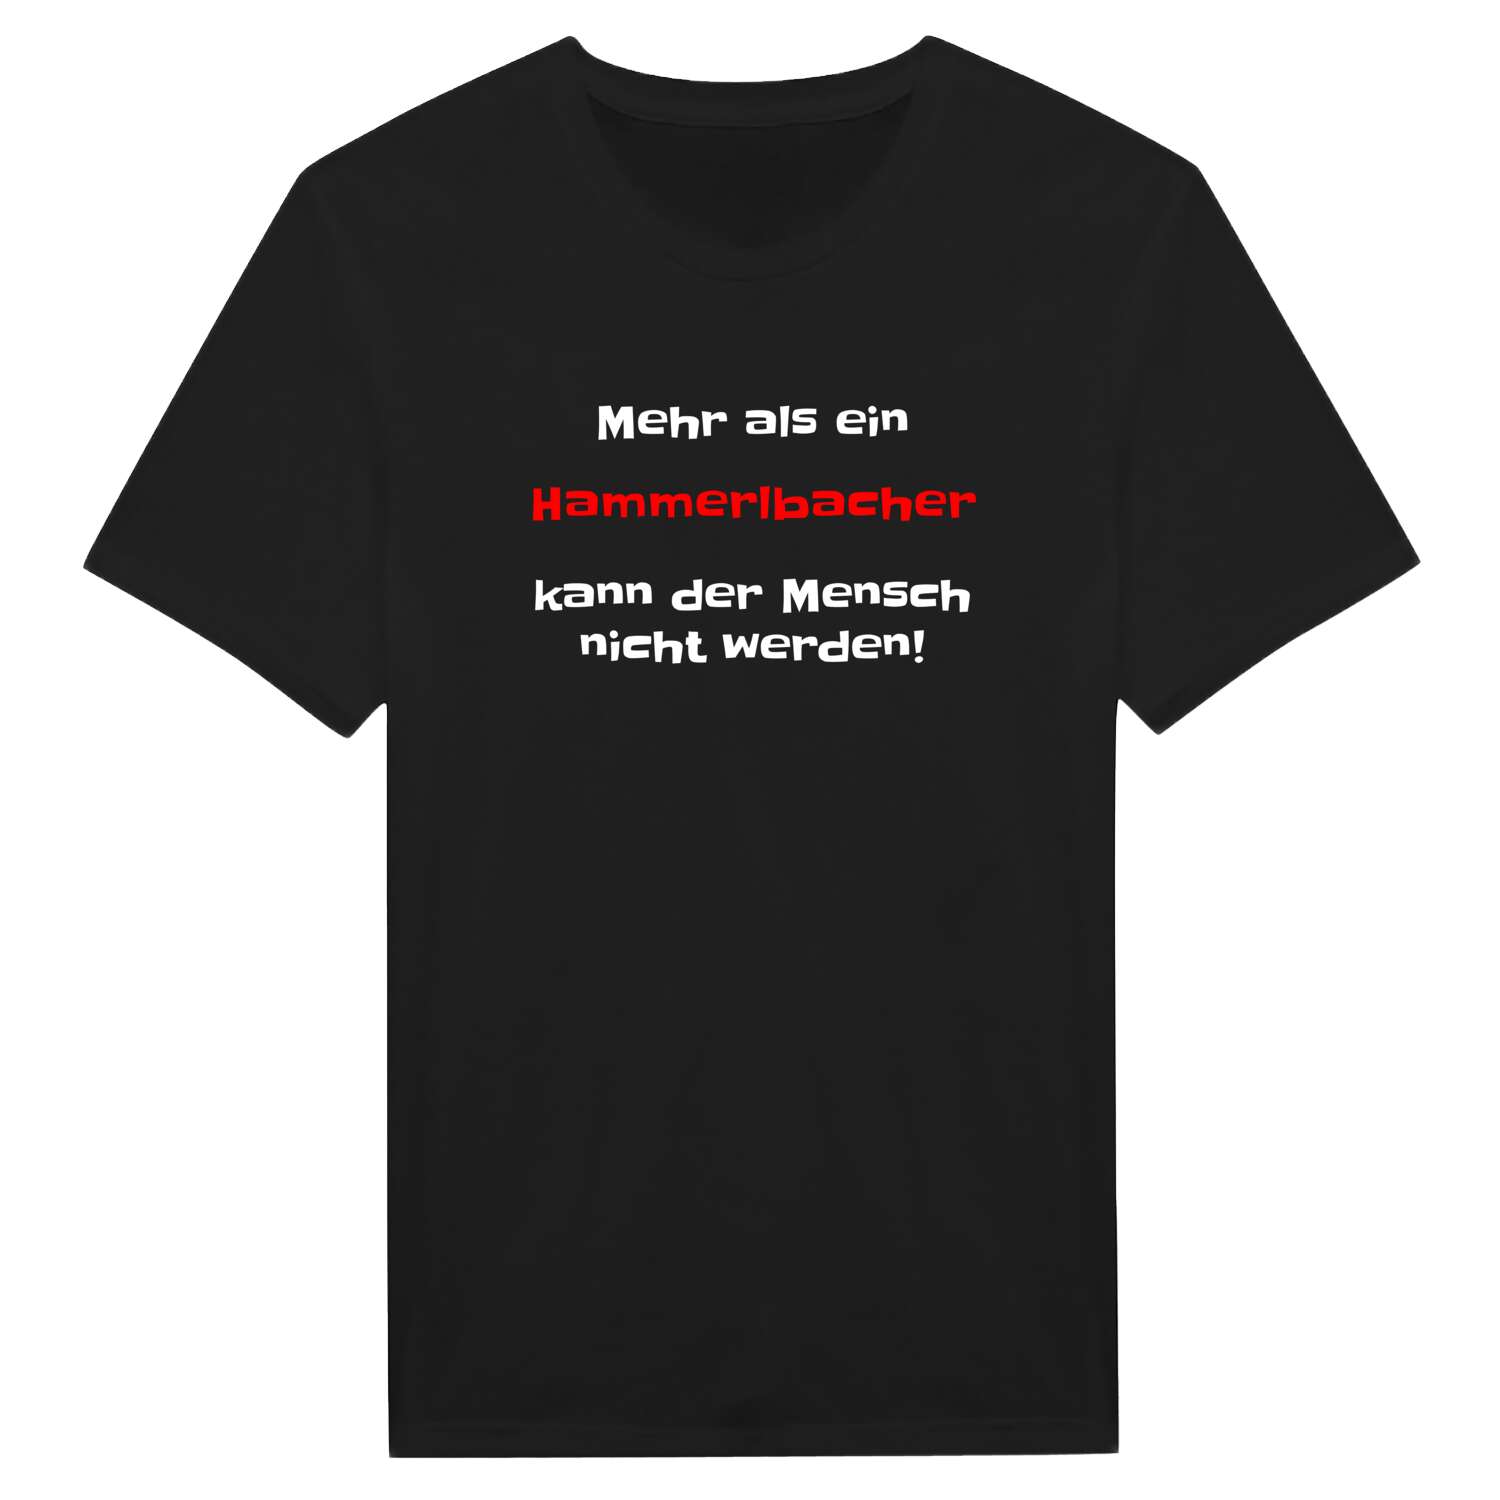 Hammerlbach T-Shirt »Mehr als ein«